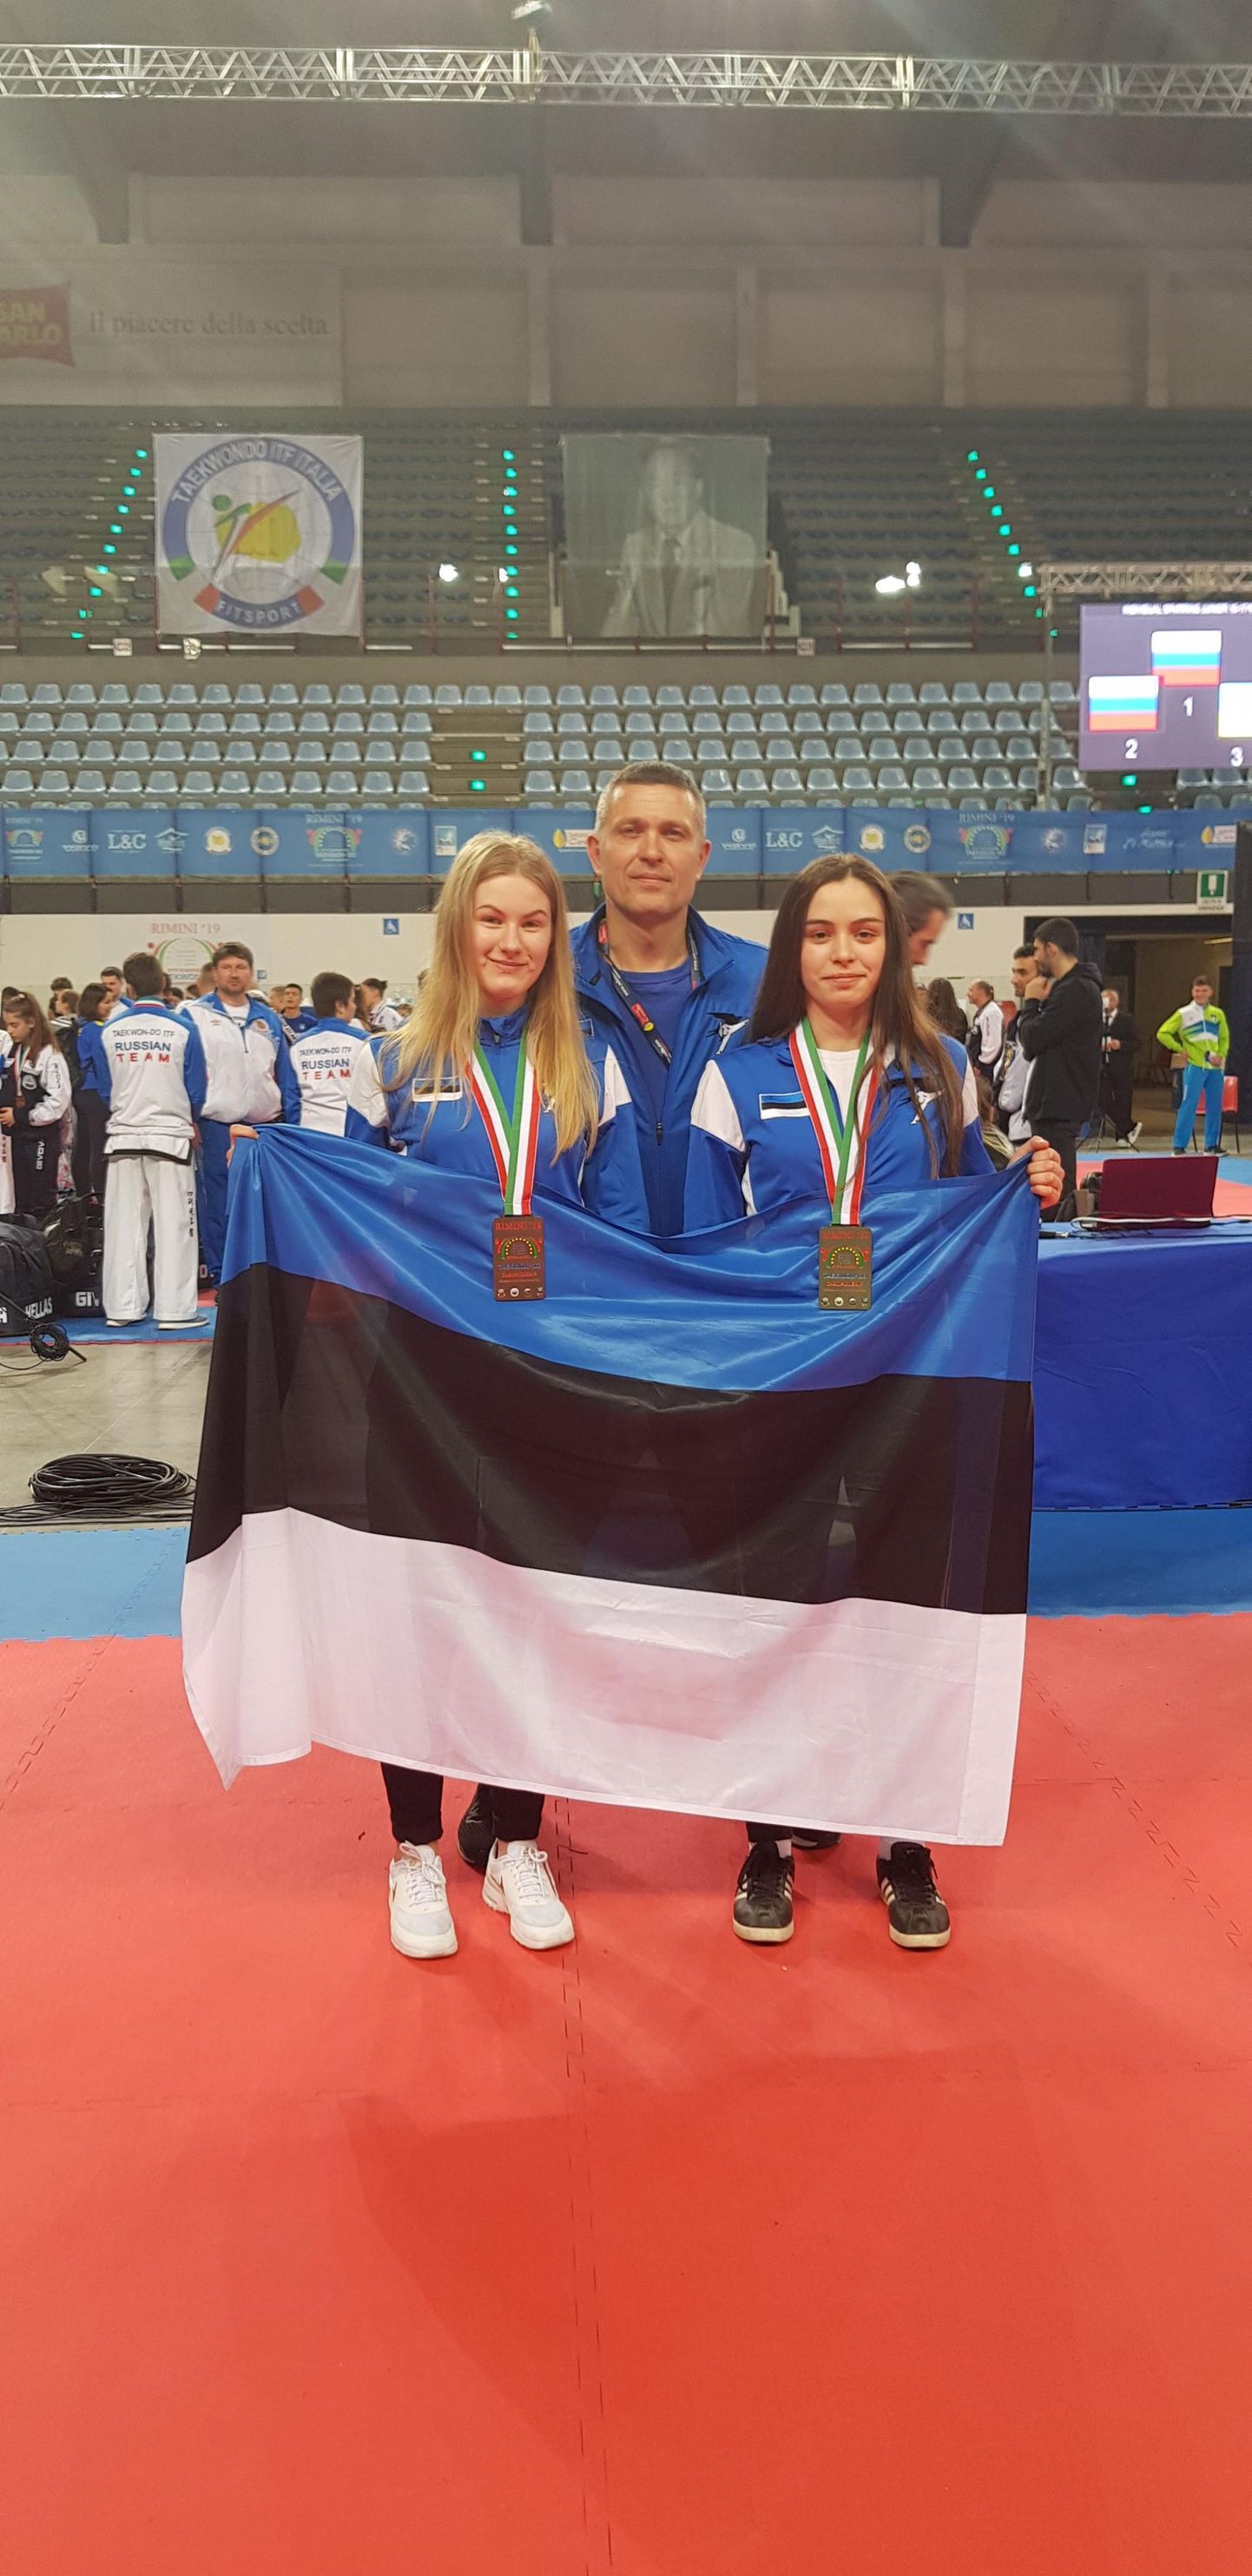 Pärnu taekwondo-klubis treeniv Kamilla Velikopolje võitis Itaalias Riminis Euroopa meistrivõistlustel kuldmedali, korrates sellega tunamullust saavutust. Anette Russ tõi Eesti koondisele kolmanda koha.